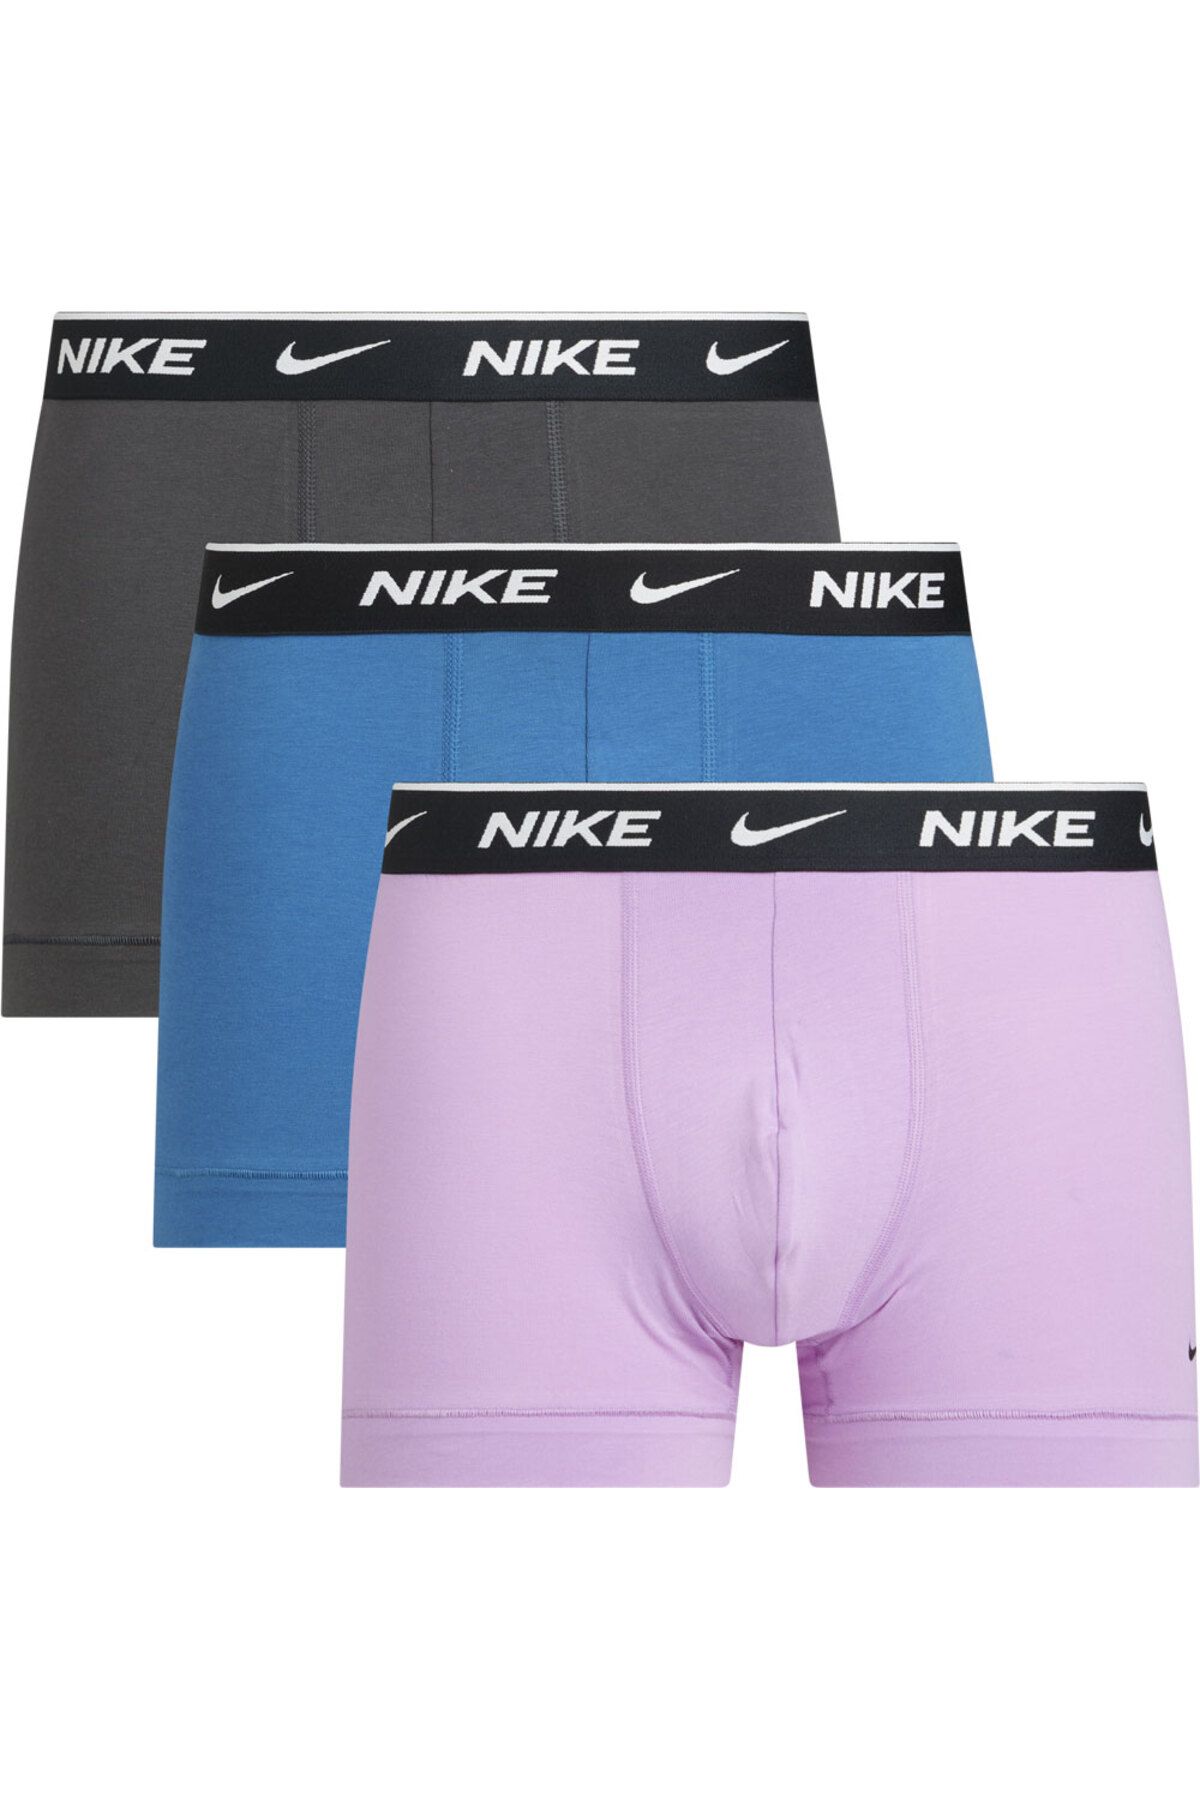 Nike Erkek Nike Marka Logolu Elastik Bantlı Günlük Kullanıma Uygun Gri-mavi-lila Boxer 0000ke1008-gg9